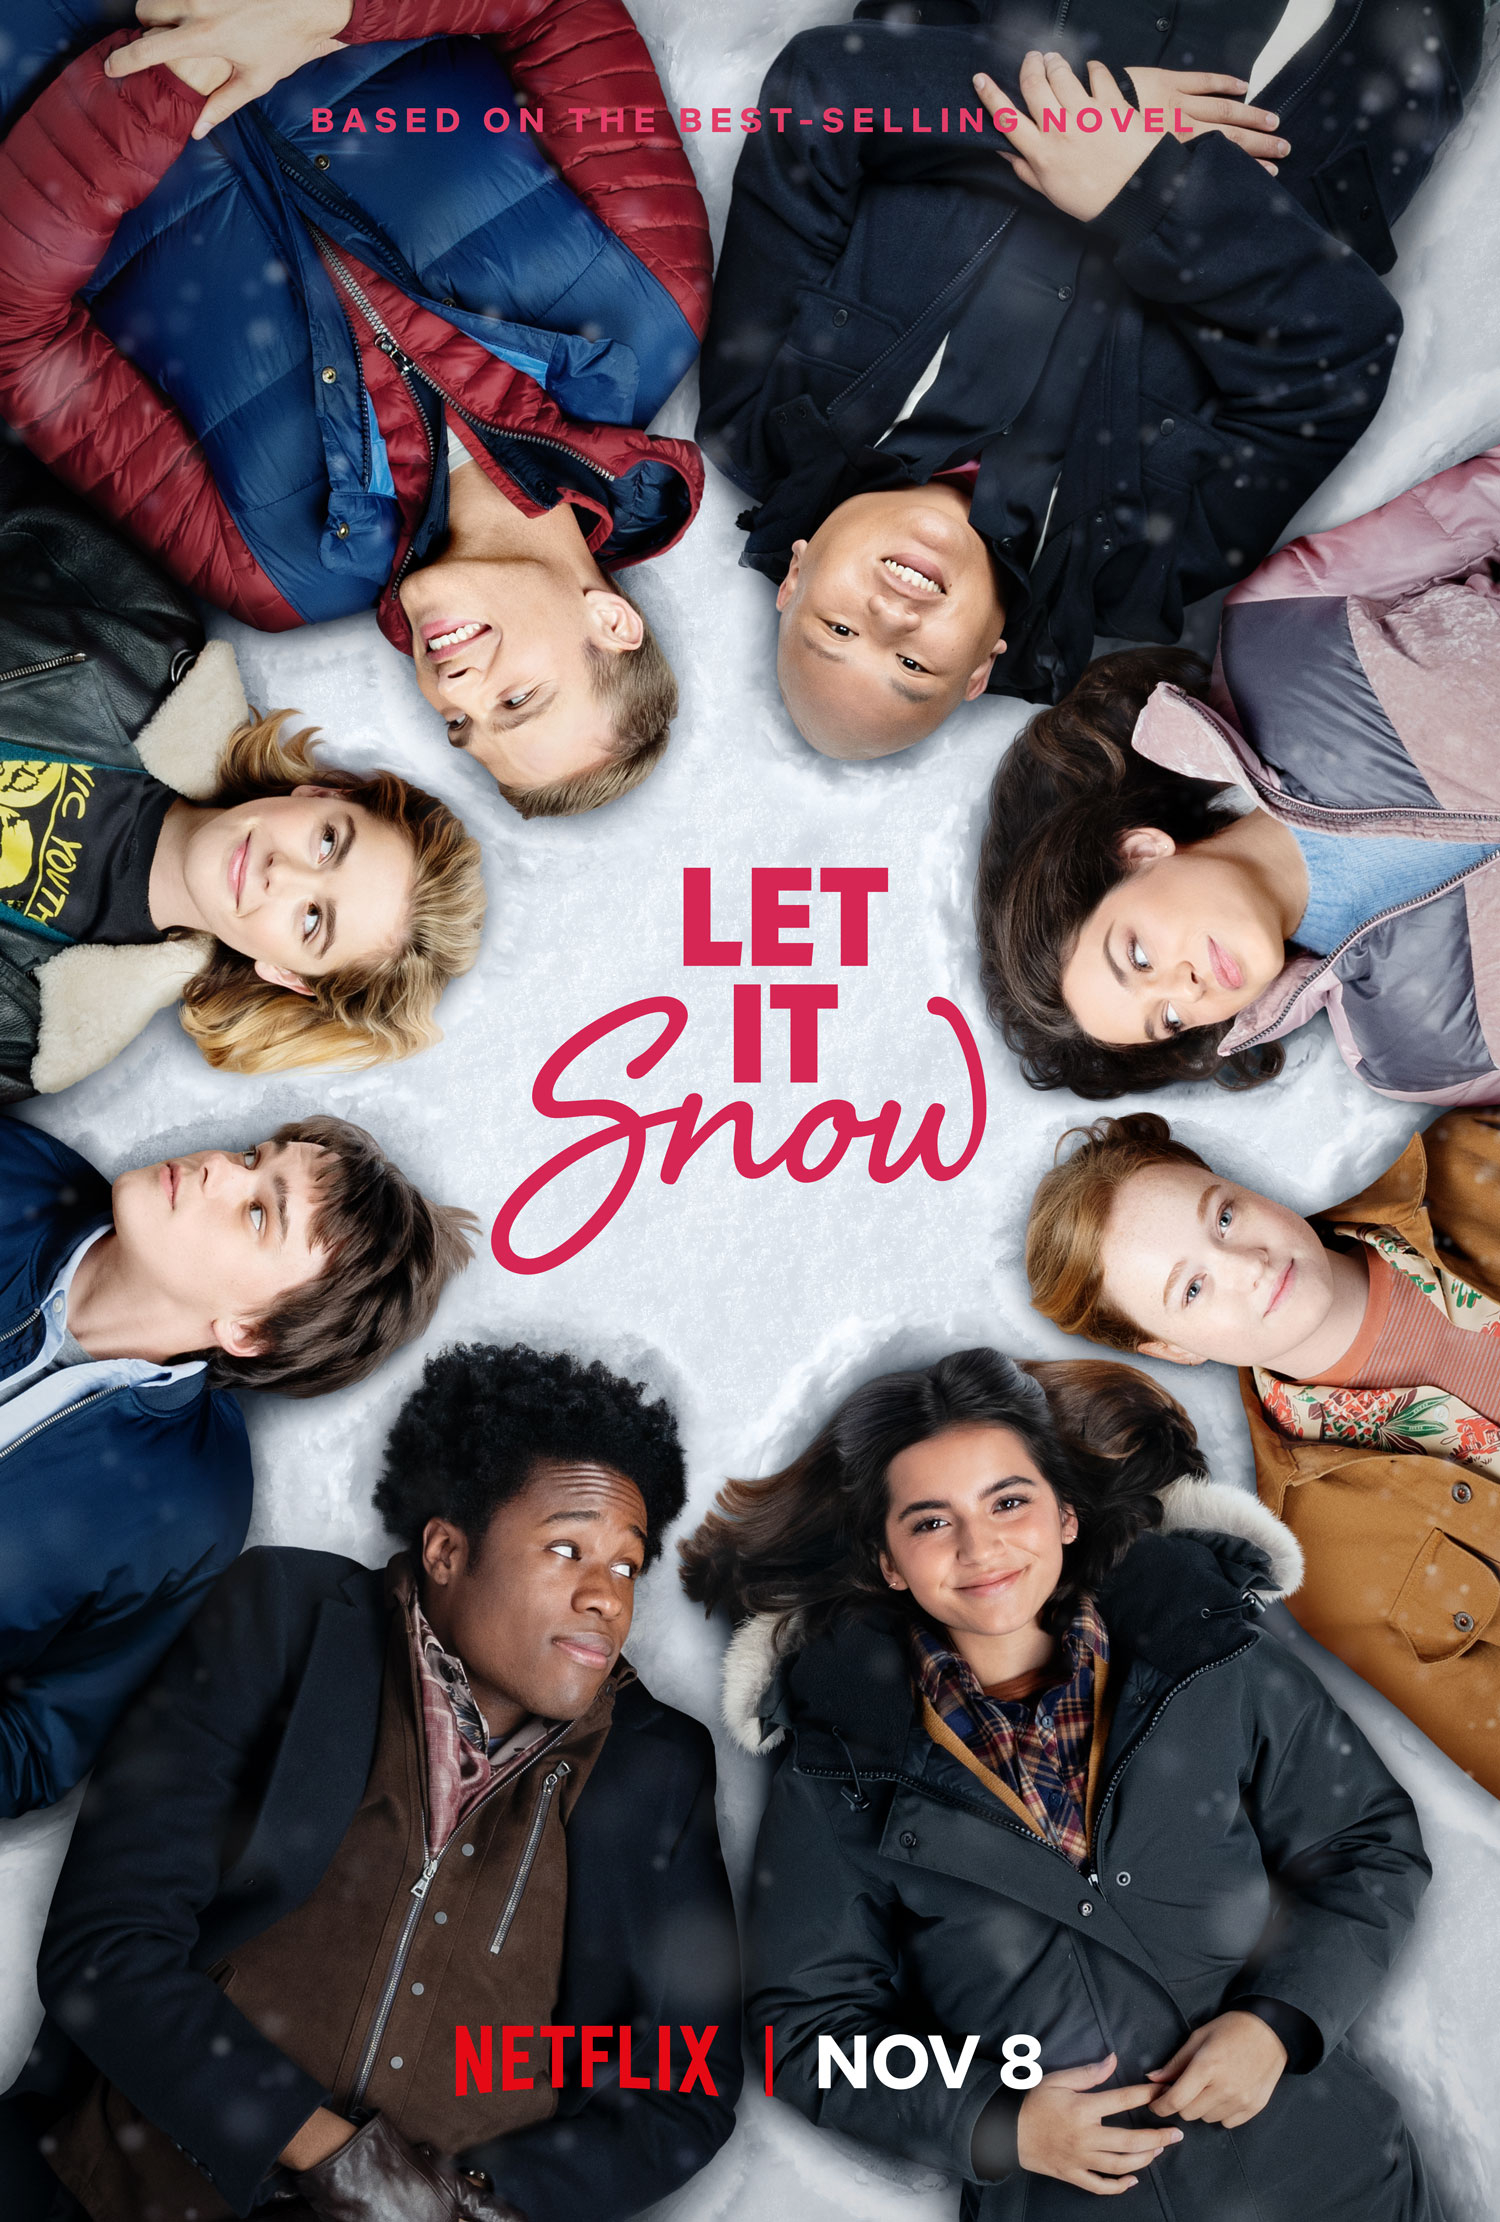 Nonton film Let It Snow layarkaca21 indoxx1 ganool online streaming terbaru